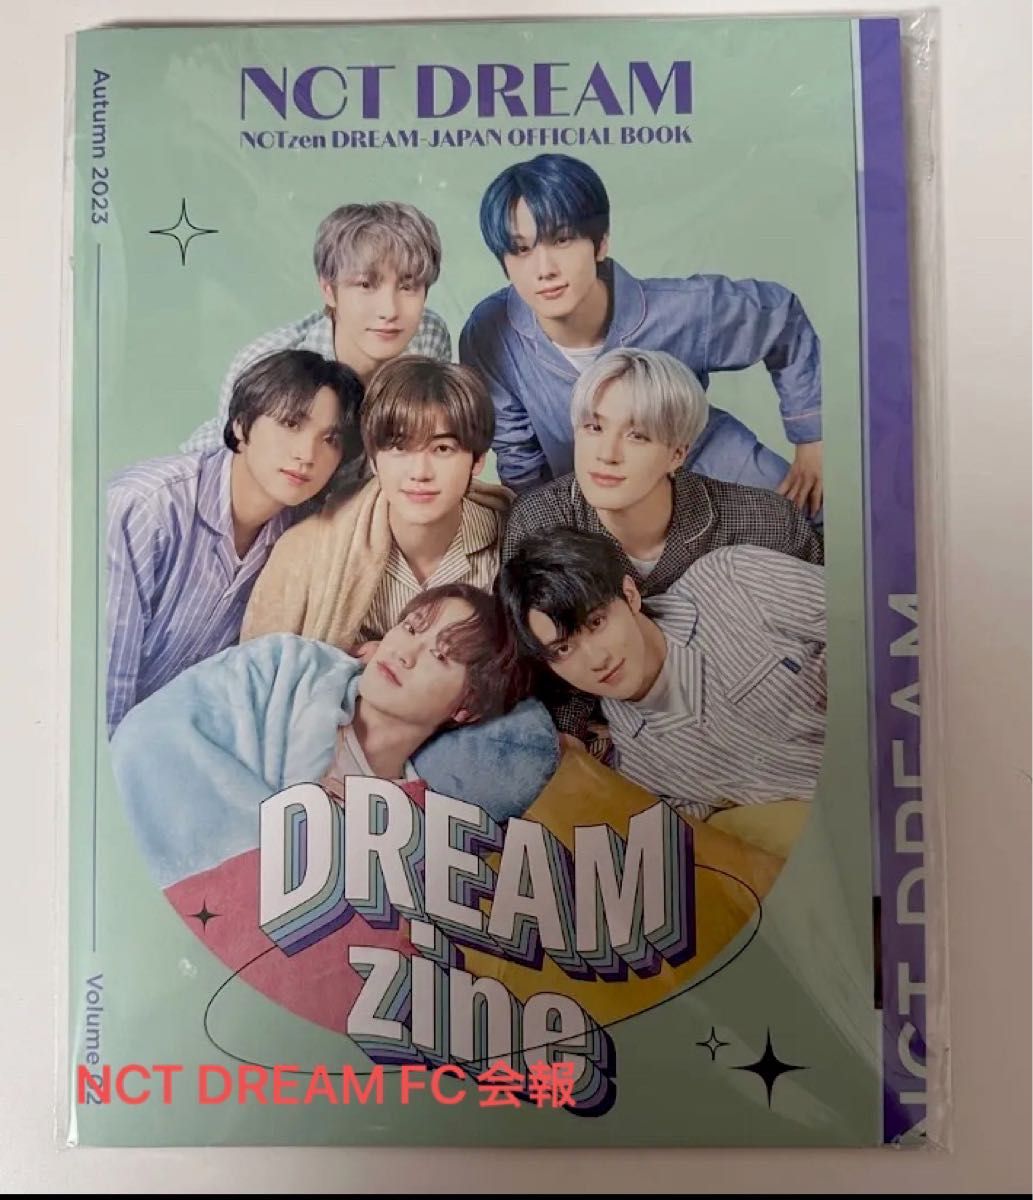 NCT The dream show ドリショ キノ ビデオ フォトブック ジェノ